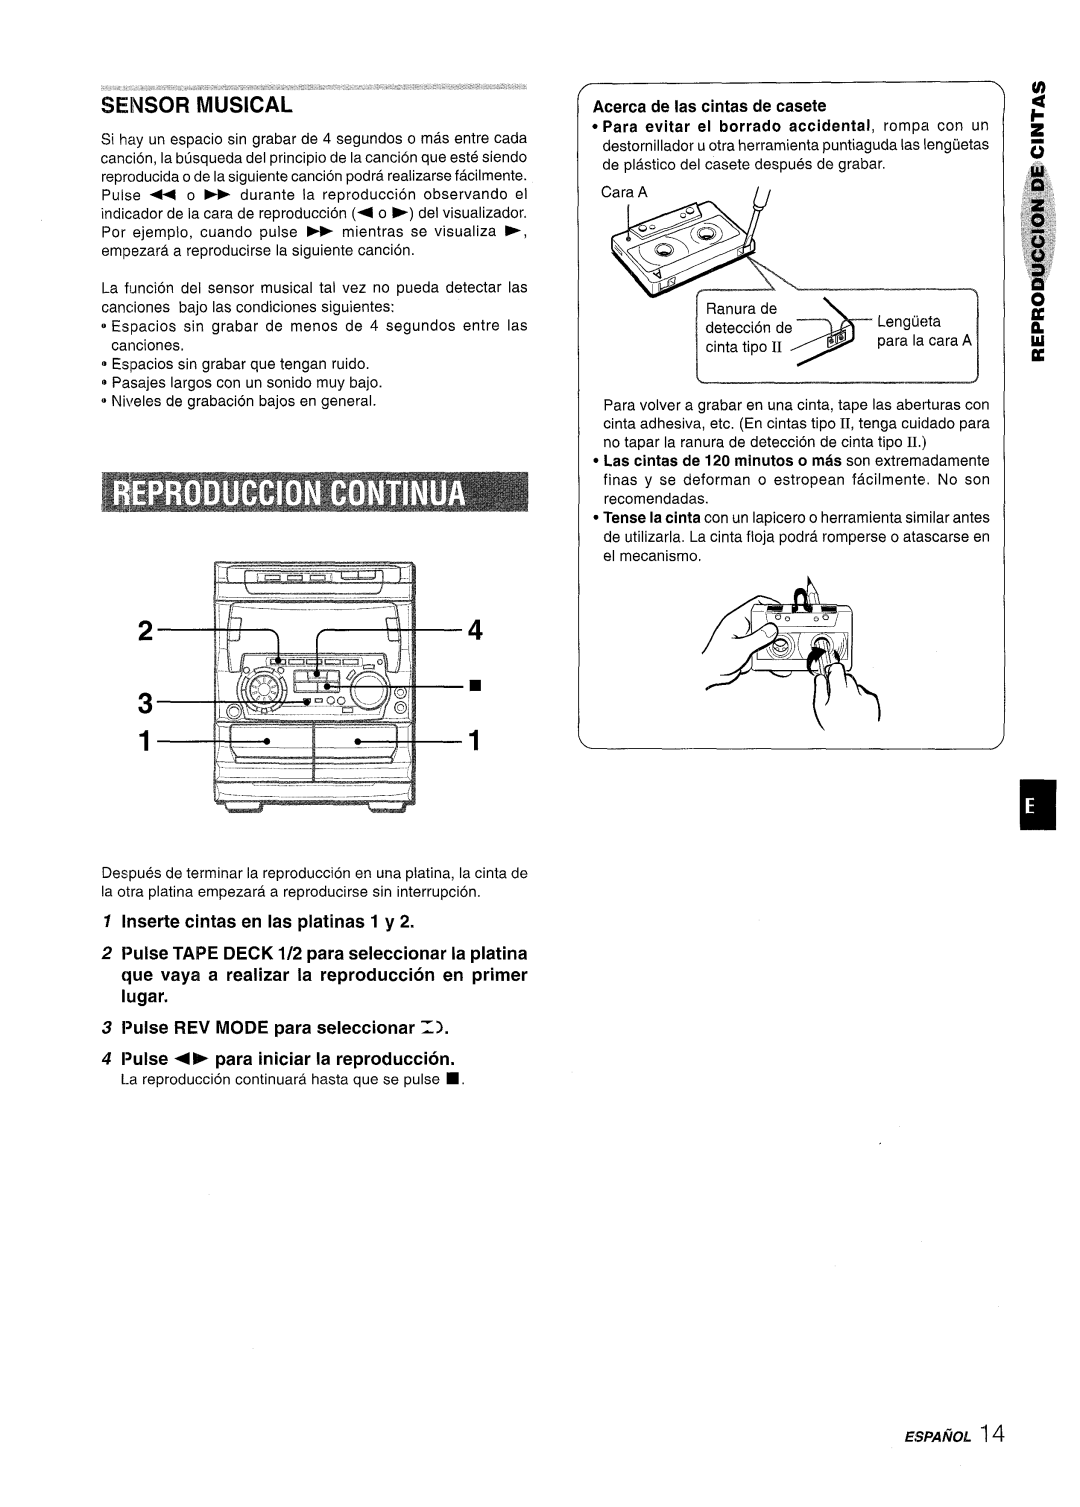 Sony NSX-A707 manual Inserte cintas en las platinas 1 y, Pulse TAPE DECK 1/2 para seleccionar la platina 